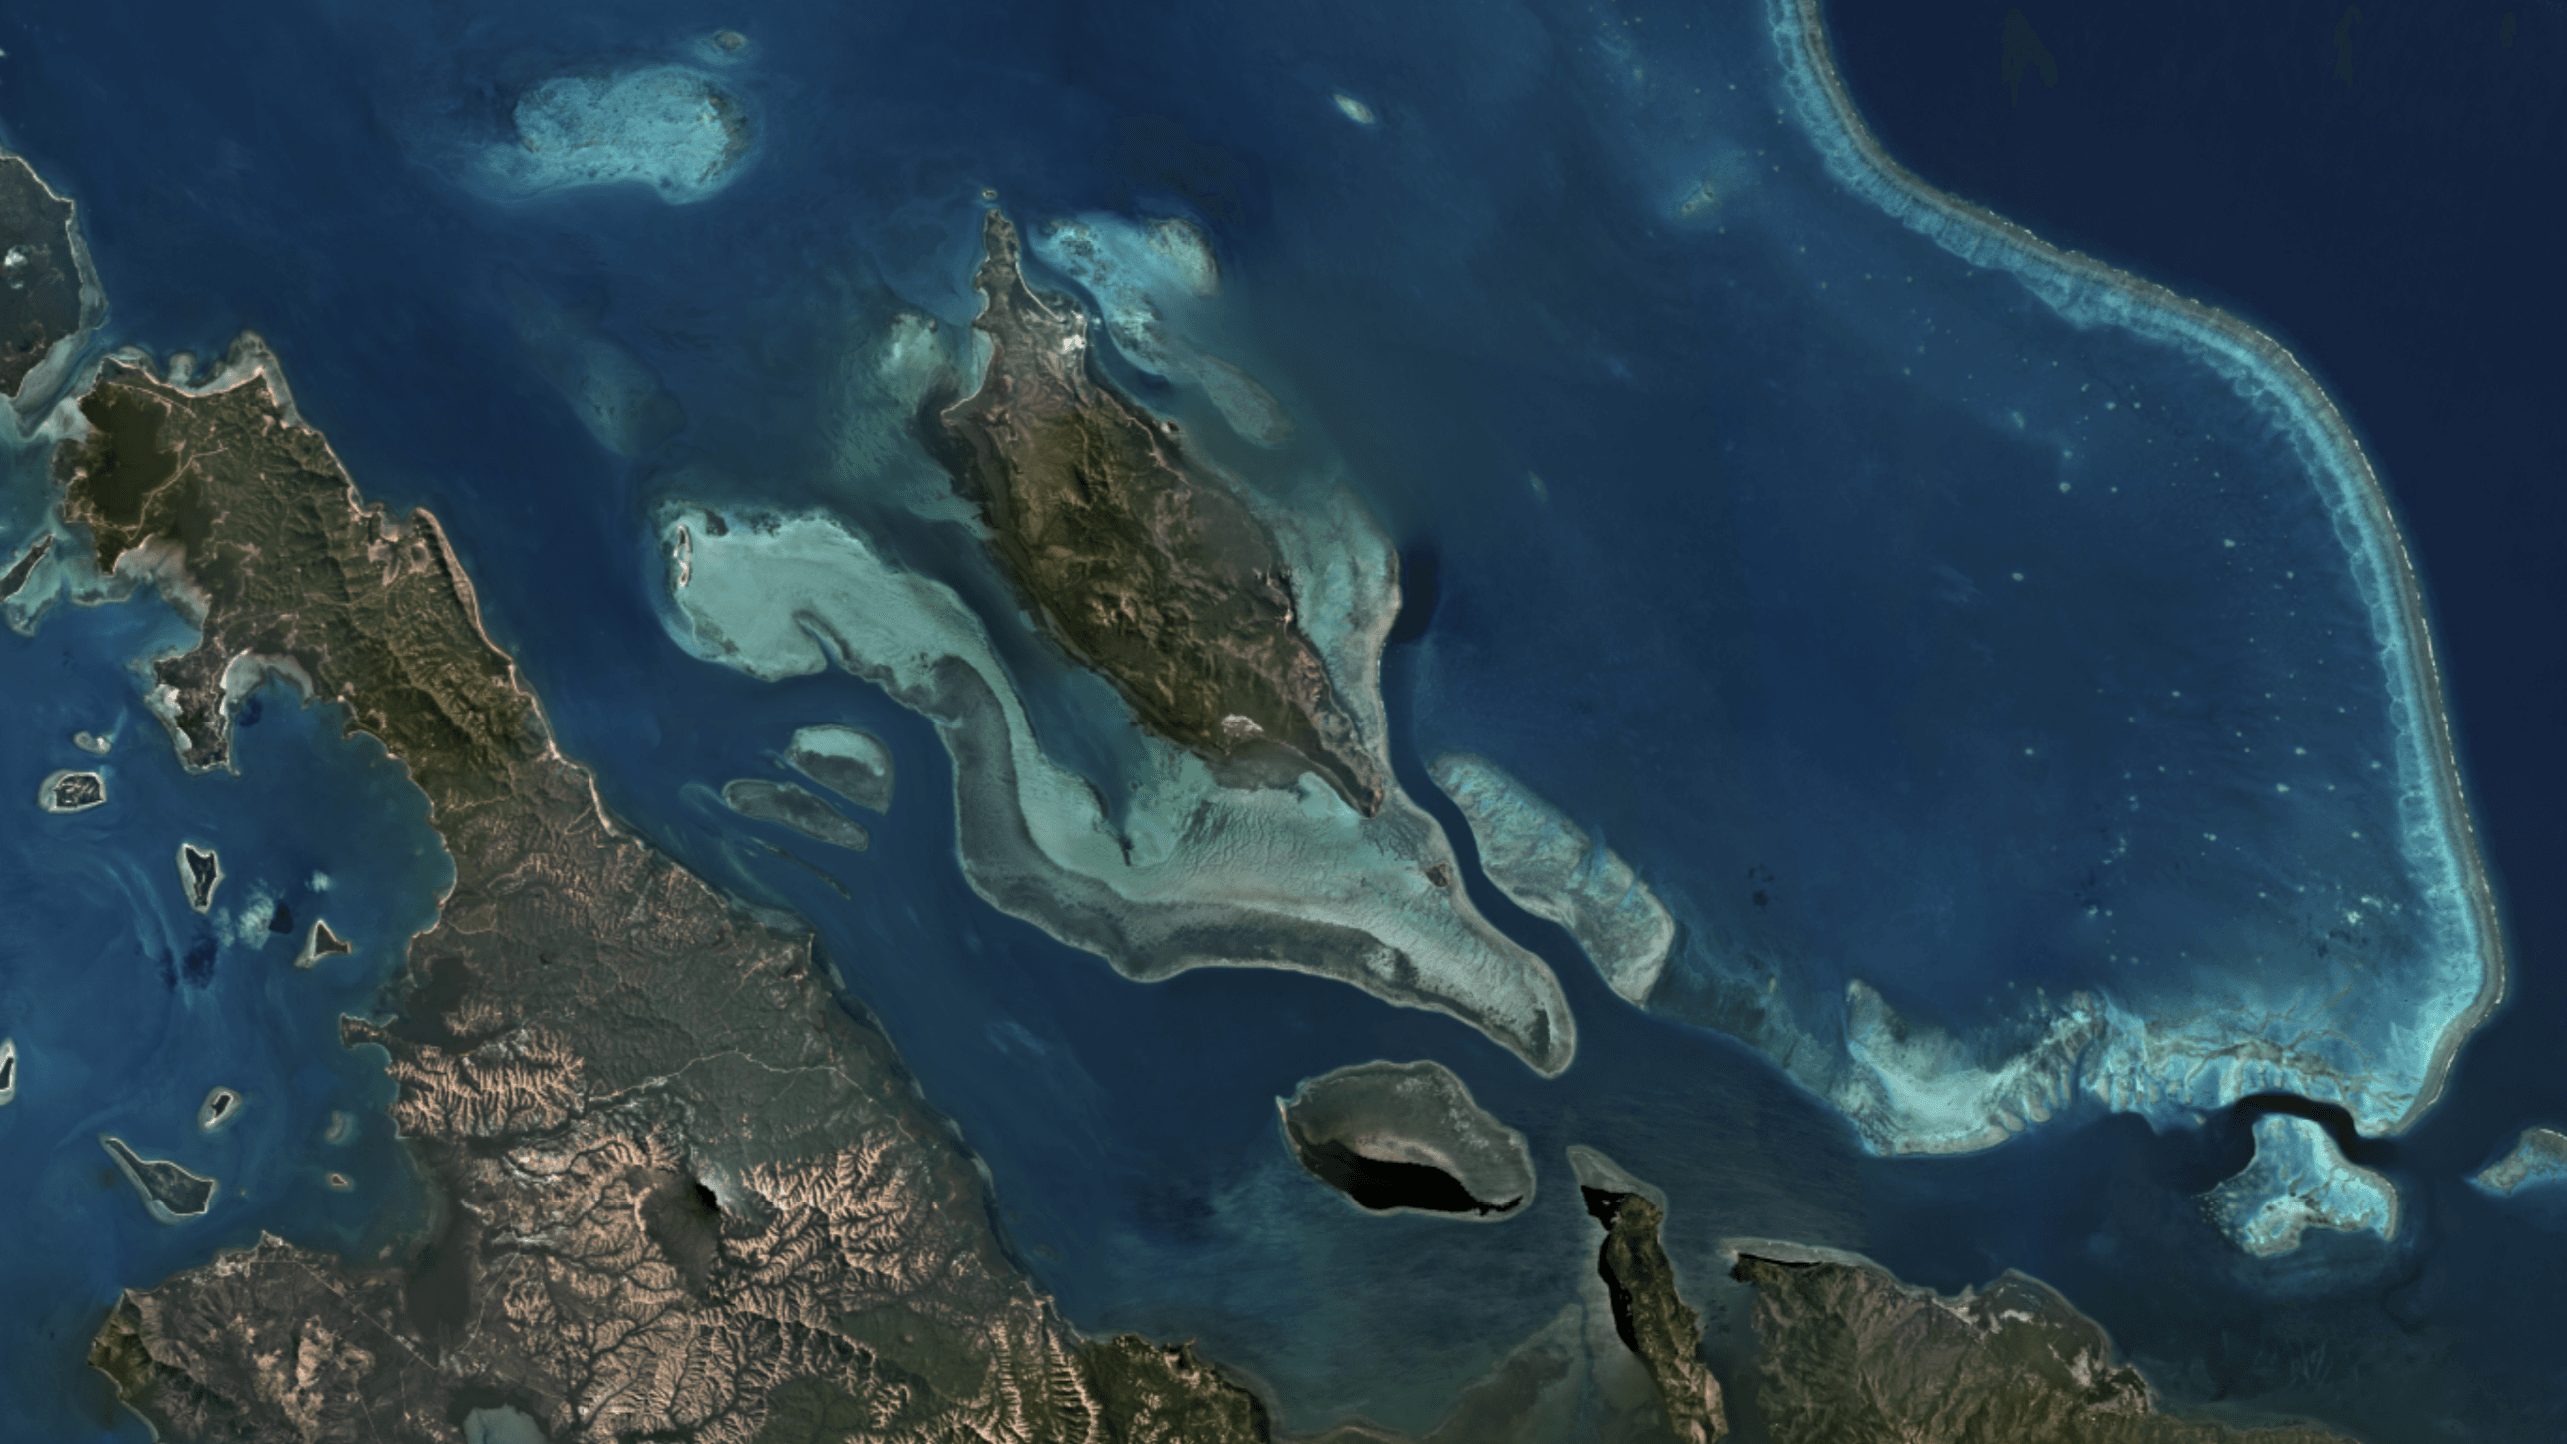 Allen Coral Atlas ger en detaljerad bild av världens korallrev, baserad på högupplösta bilder. Sammanställningar visar nu att mängden korallrev är nästan 25 procent större än tidigare uppskattningar. Foto: Allen Coral Atlas